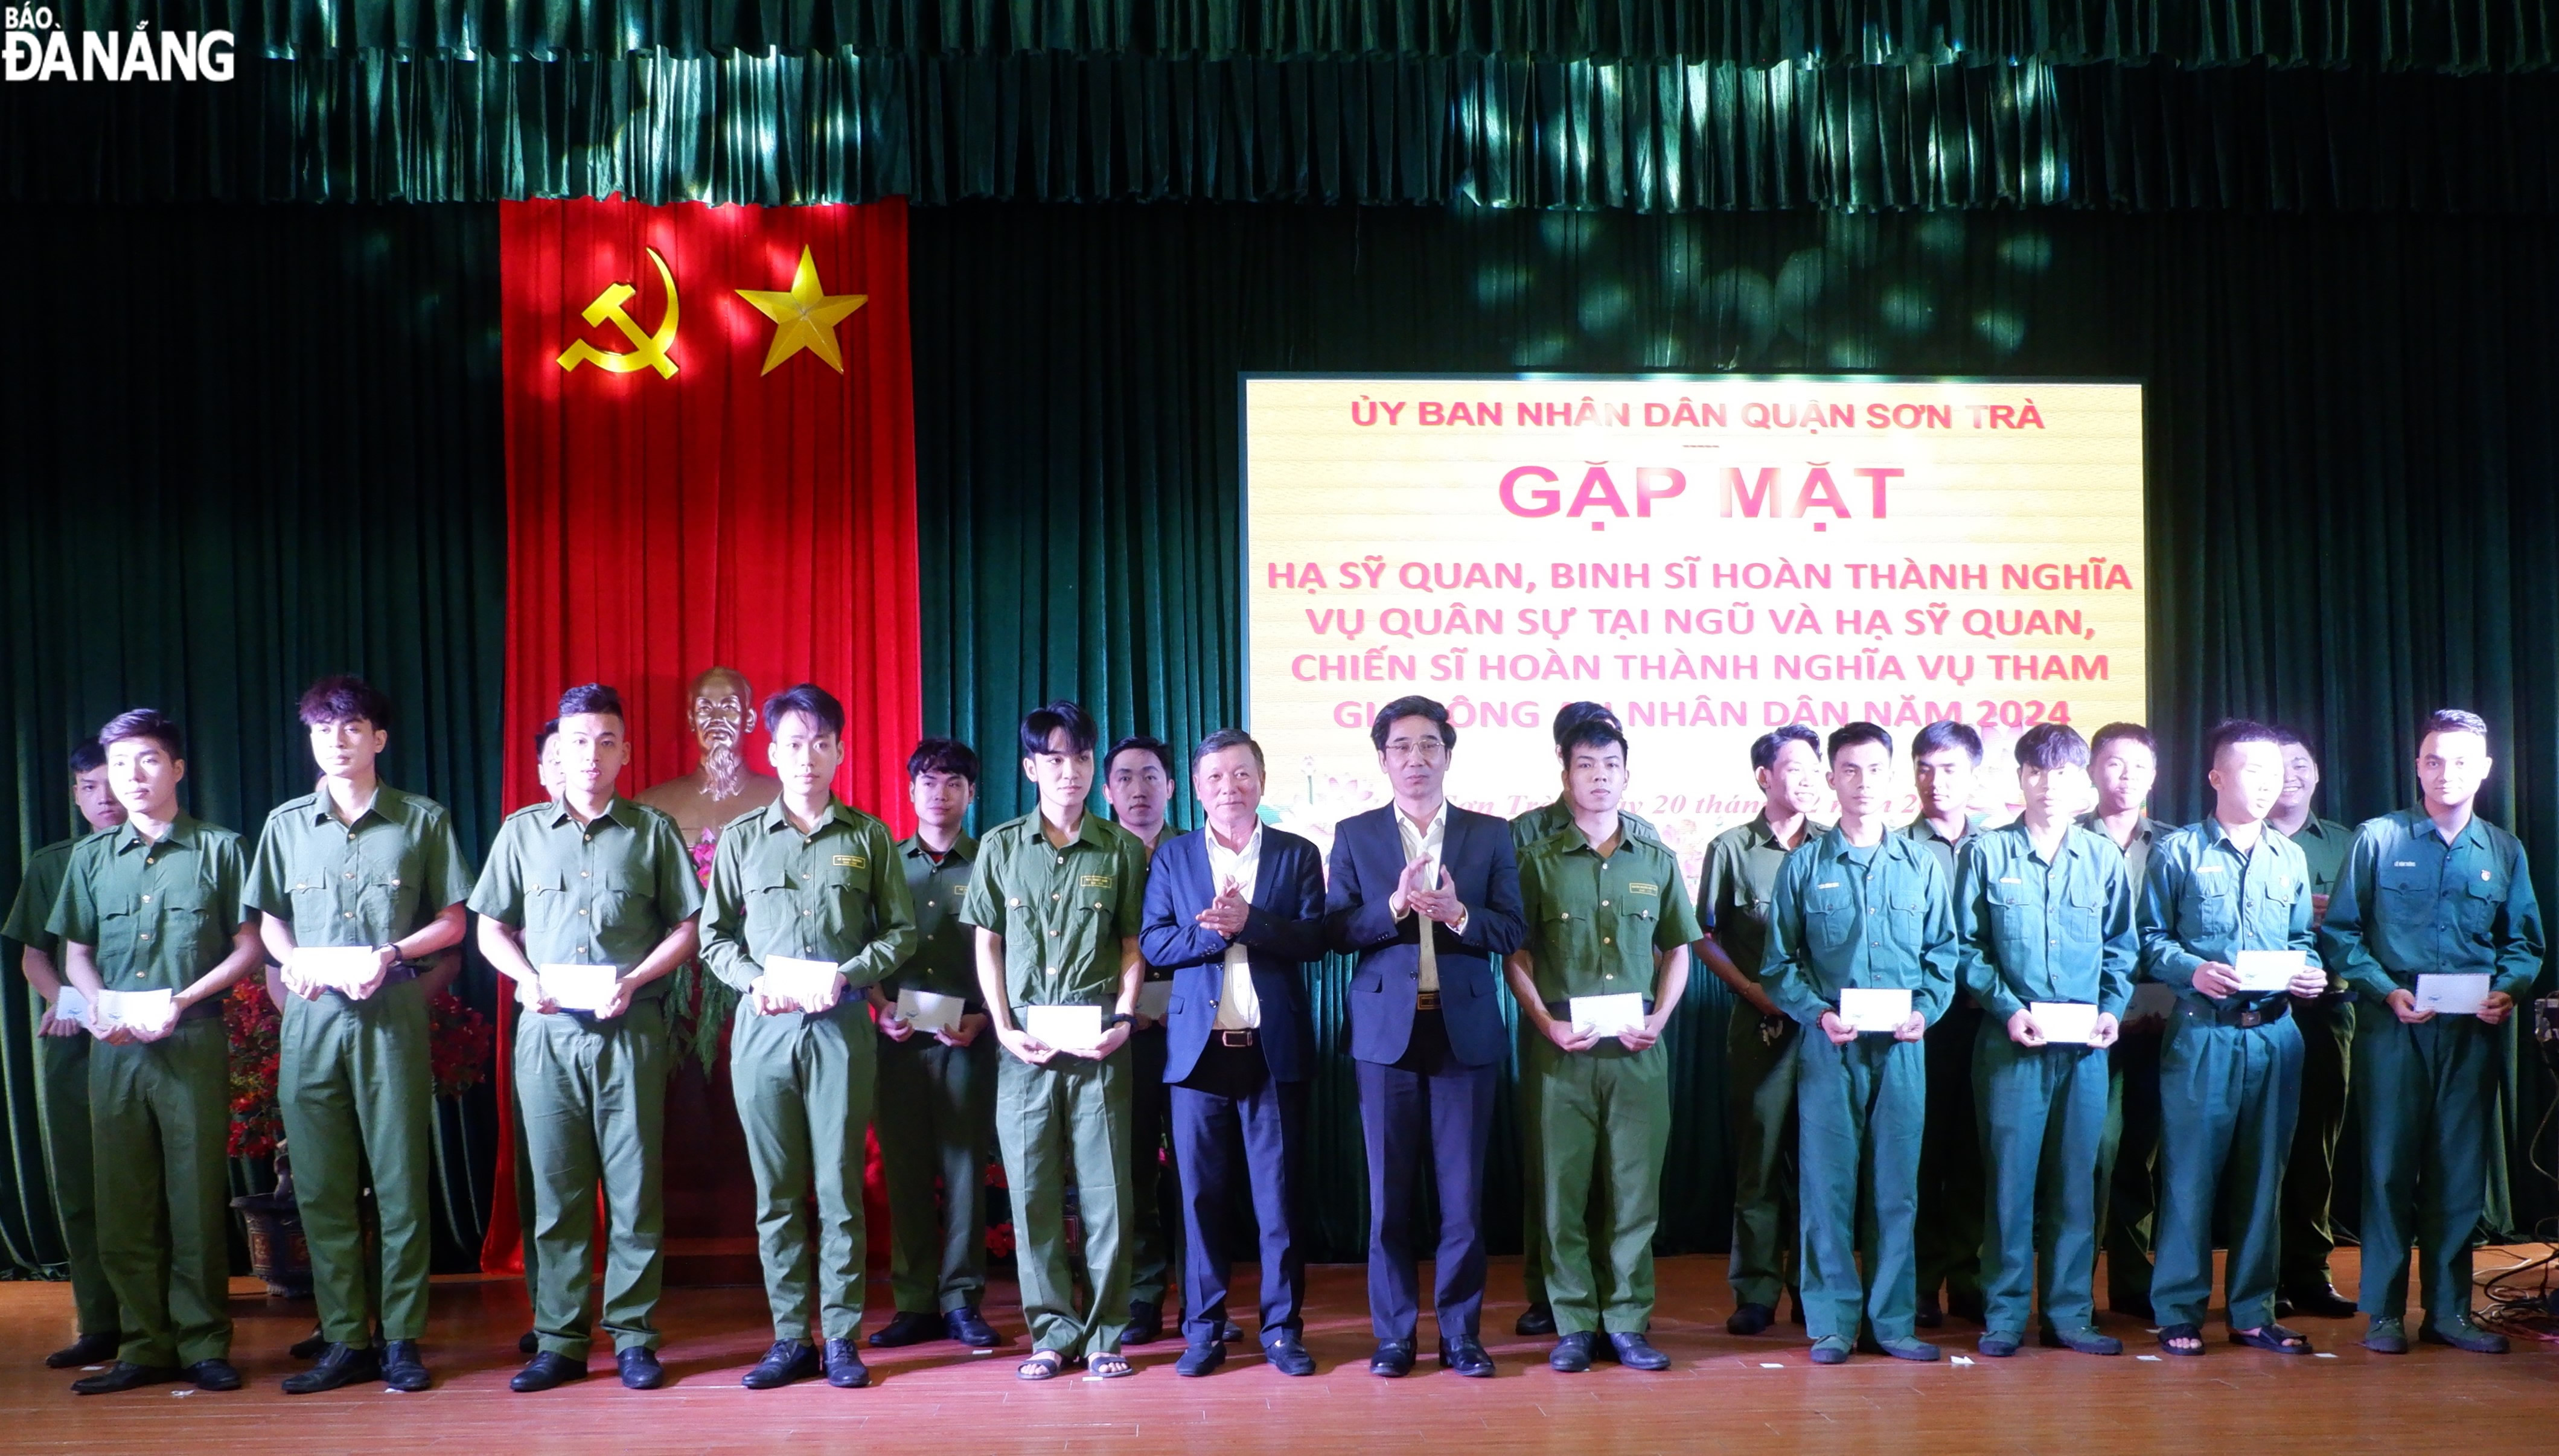 Trưởng ban Dân vận Thành ủy Lê Văn Trung và Phó Chủ tịch UBND thành phố Trần Chí Cường tặng quà cho các quân nhân xuất ngũ. Ảnh: LAM PHƯƠNG